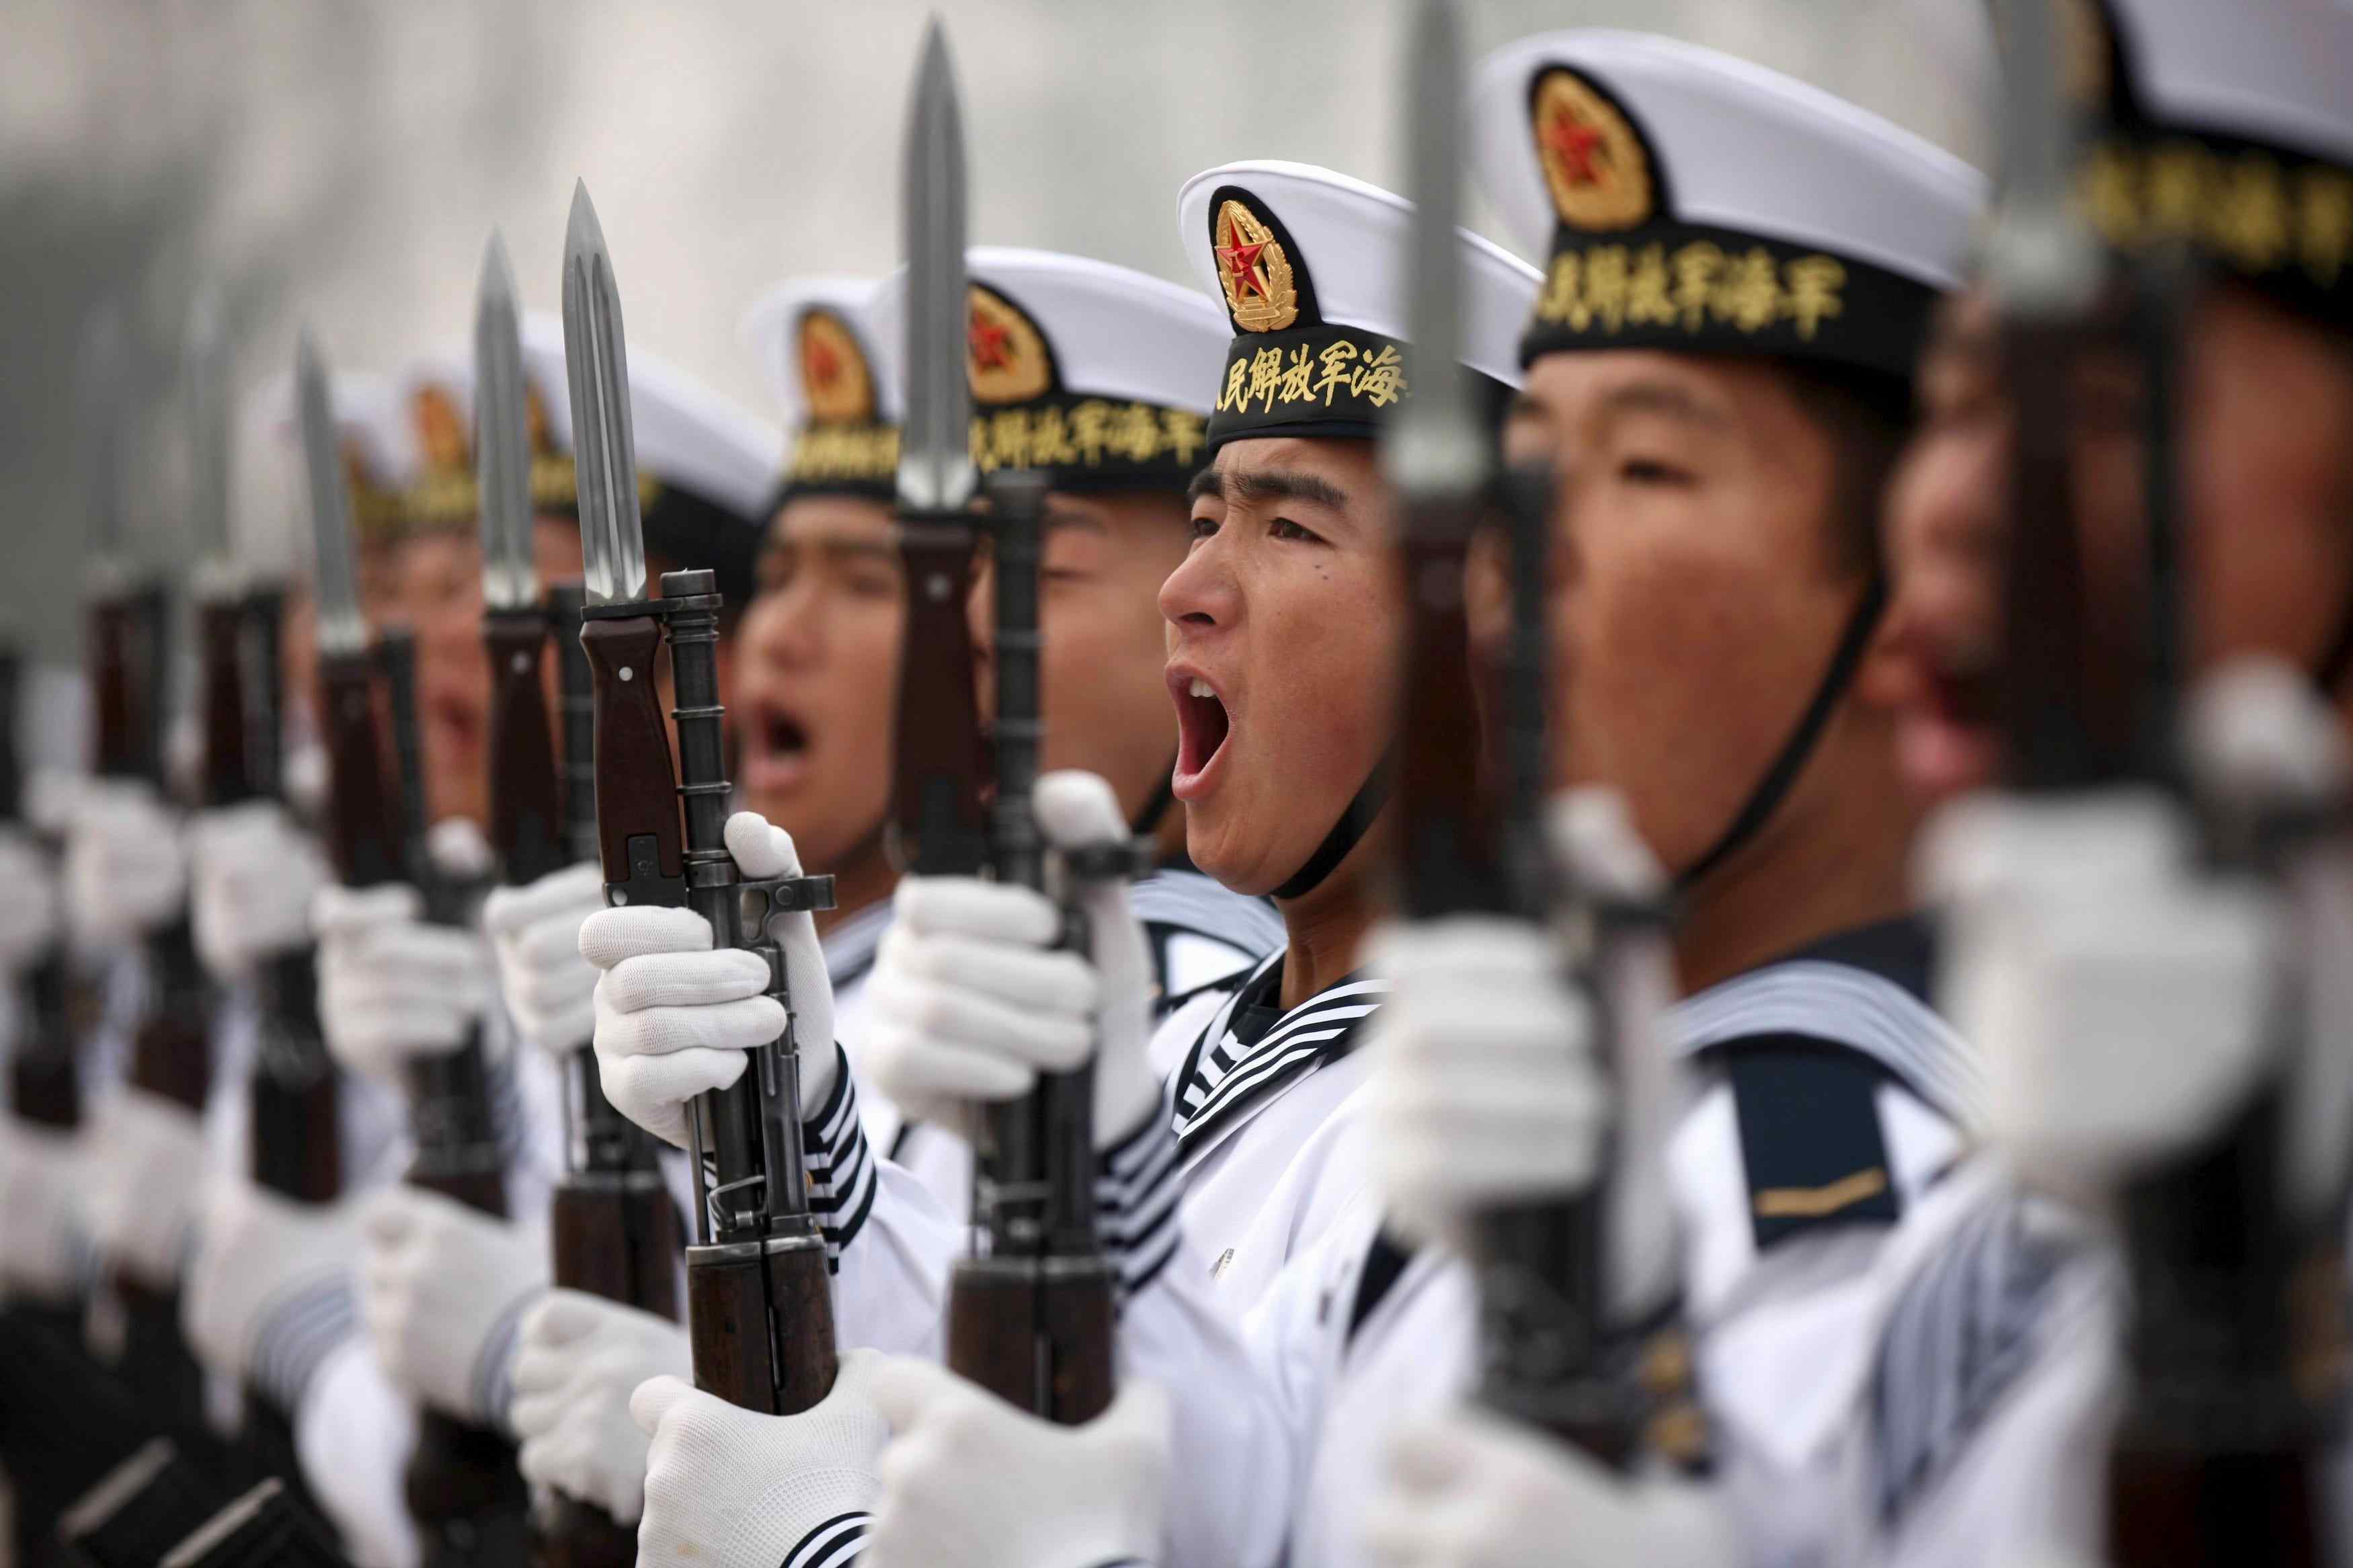 La Chine pourrait tenter de s'emparer d'une base aérienne américaine critique dans l'Atlantique